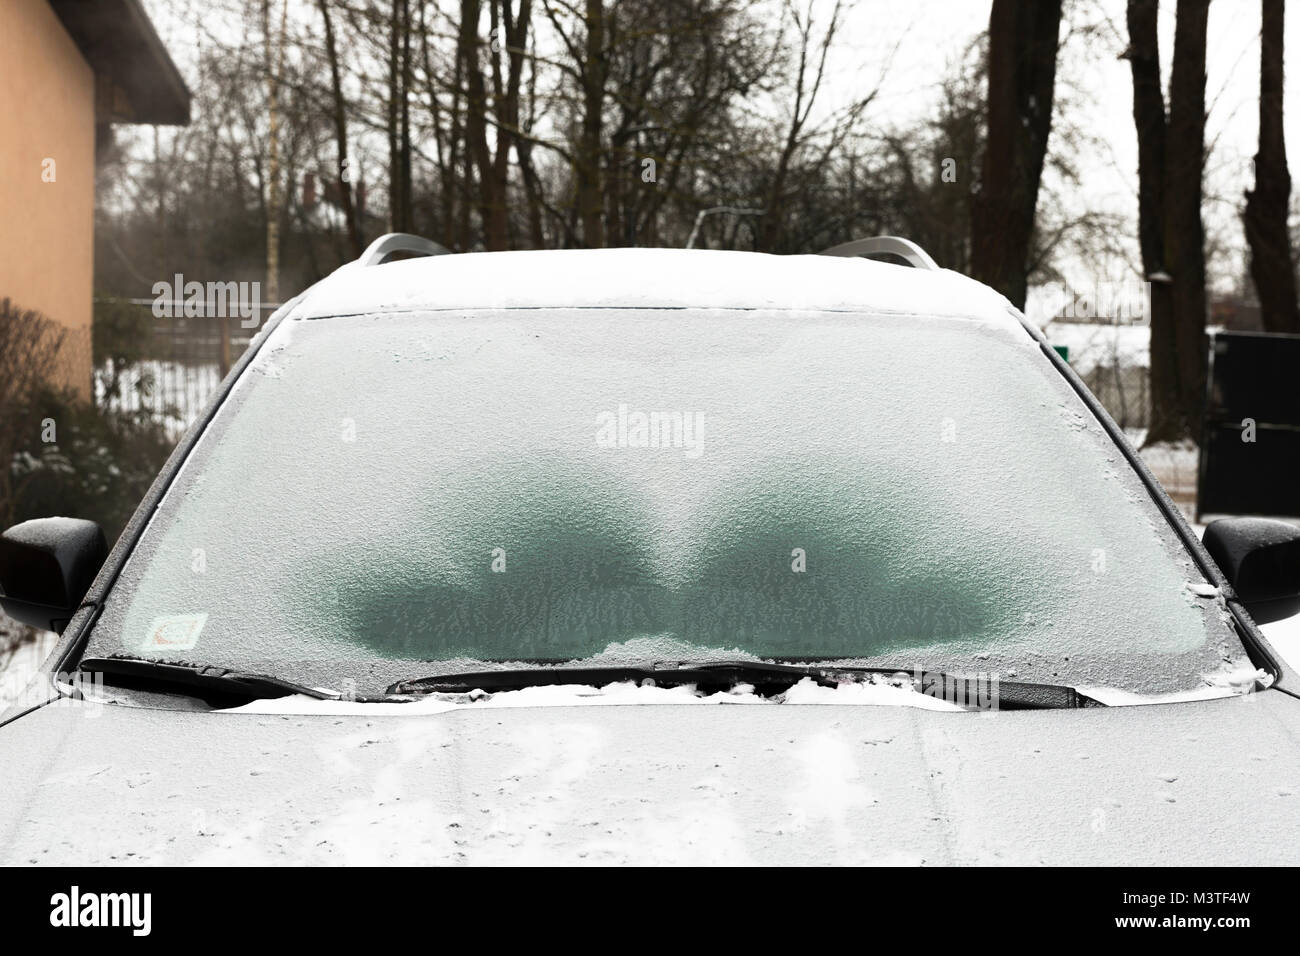 https://c8.alamy.com/comp/M3TF4W/defrosting-ice-from-car-windshield-M3TF4W.jpg